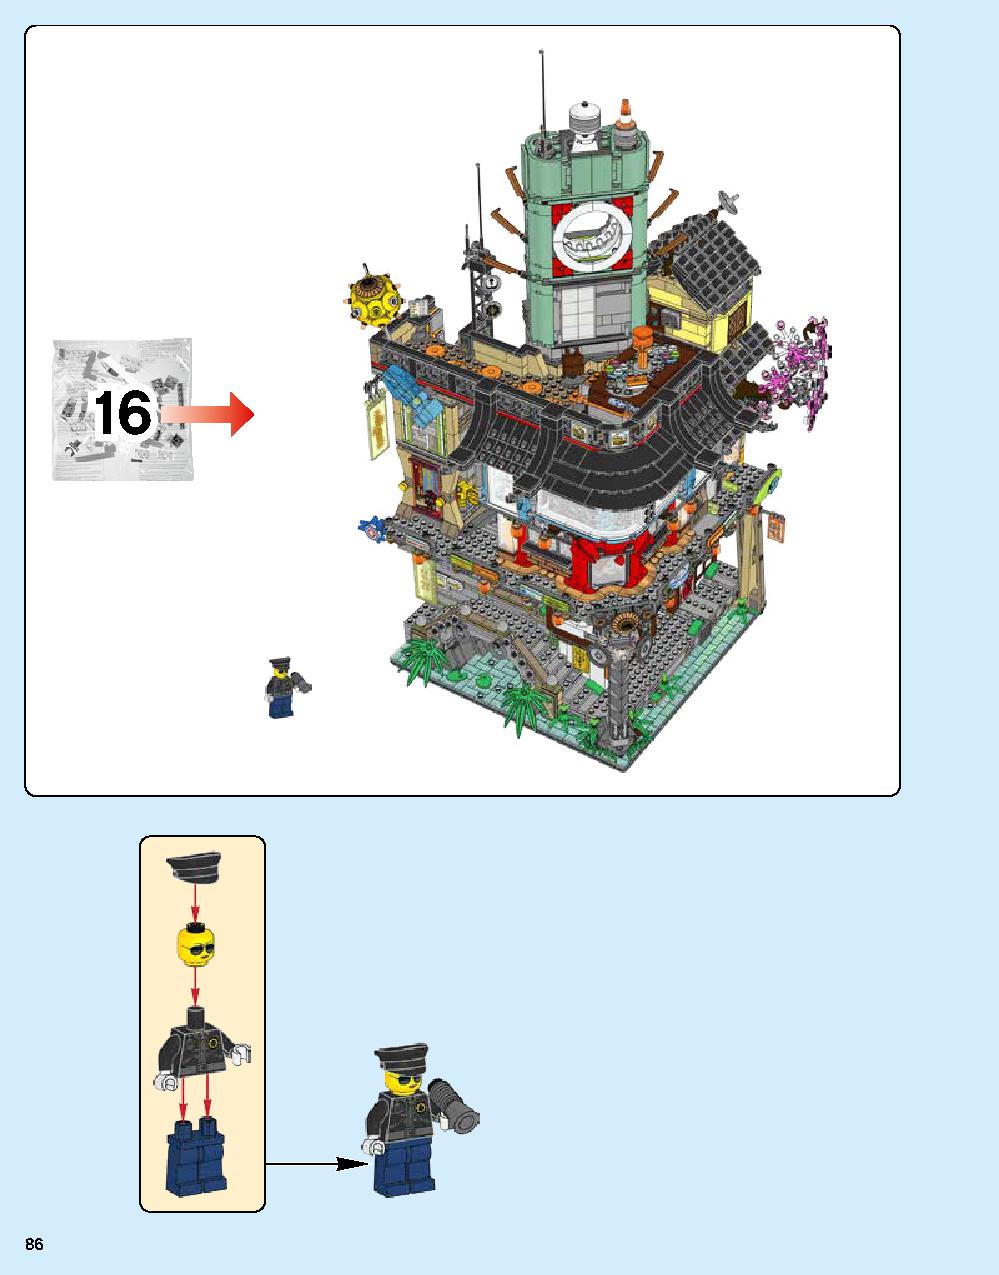 ニンジャゴー シティ 70620 レゴの商品情報 レゴの説明書・組立方法 86 page